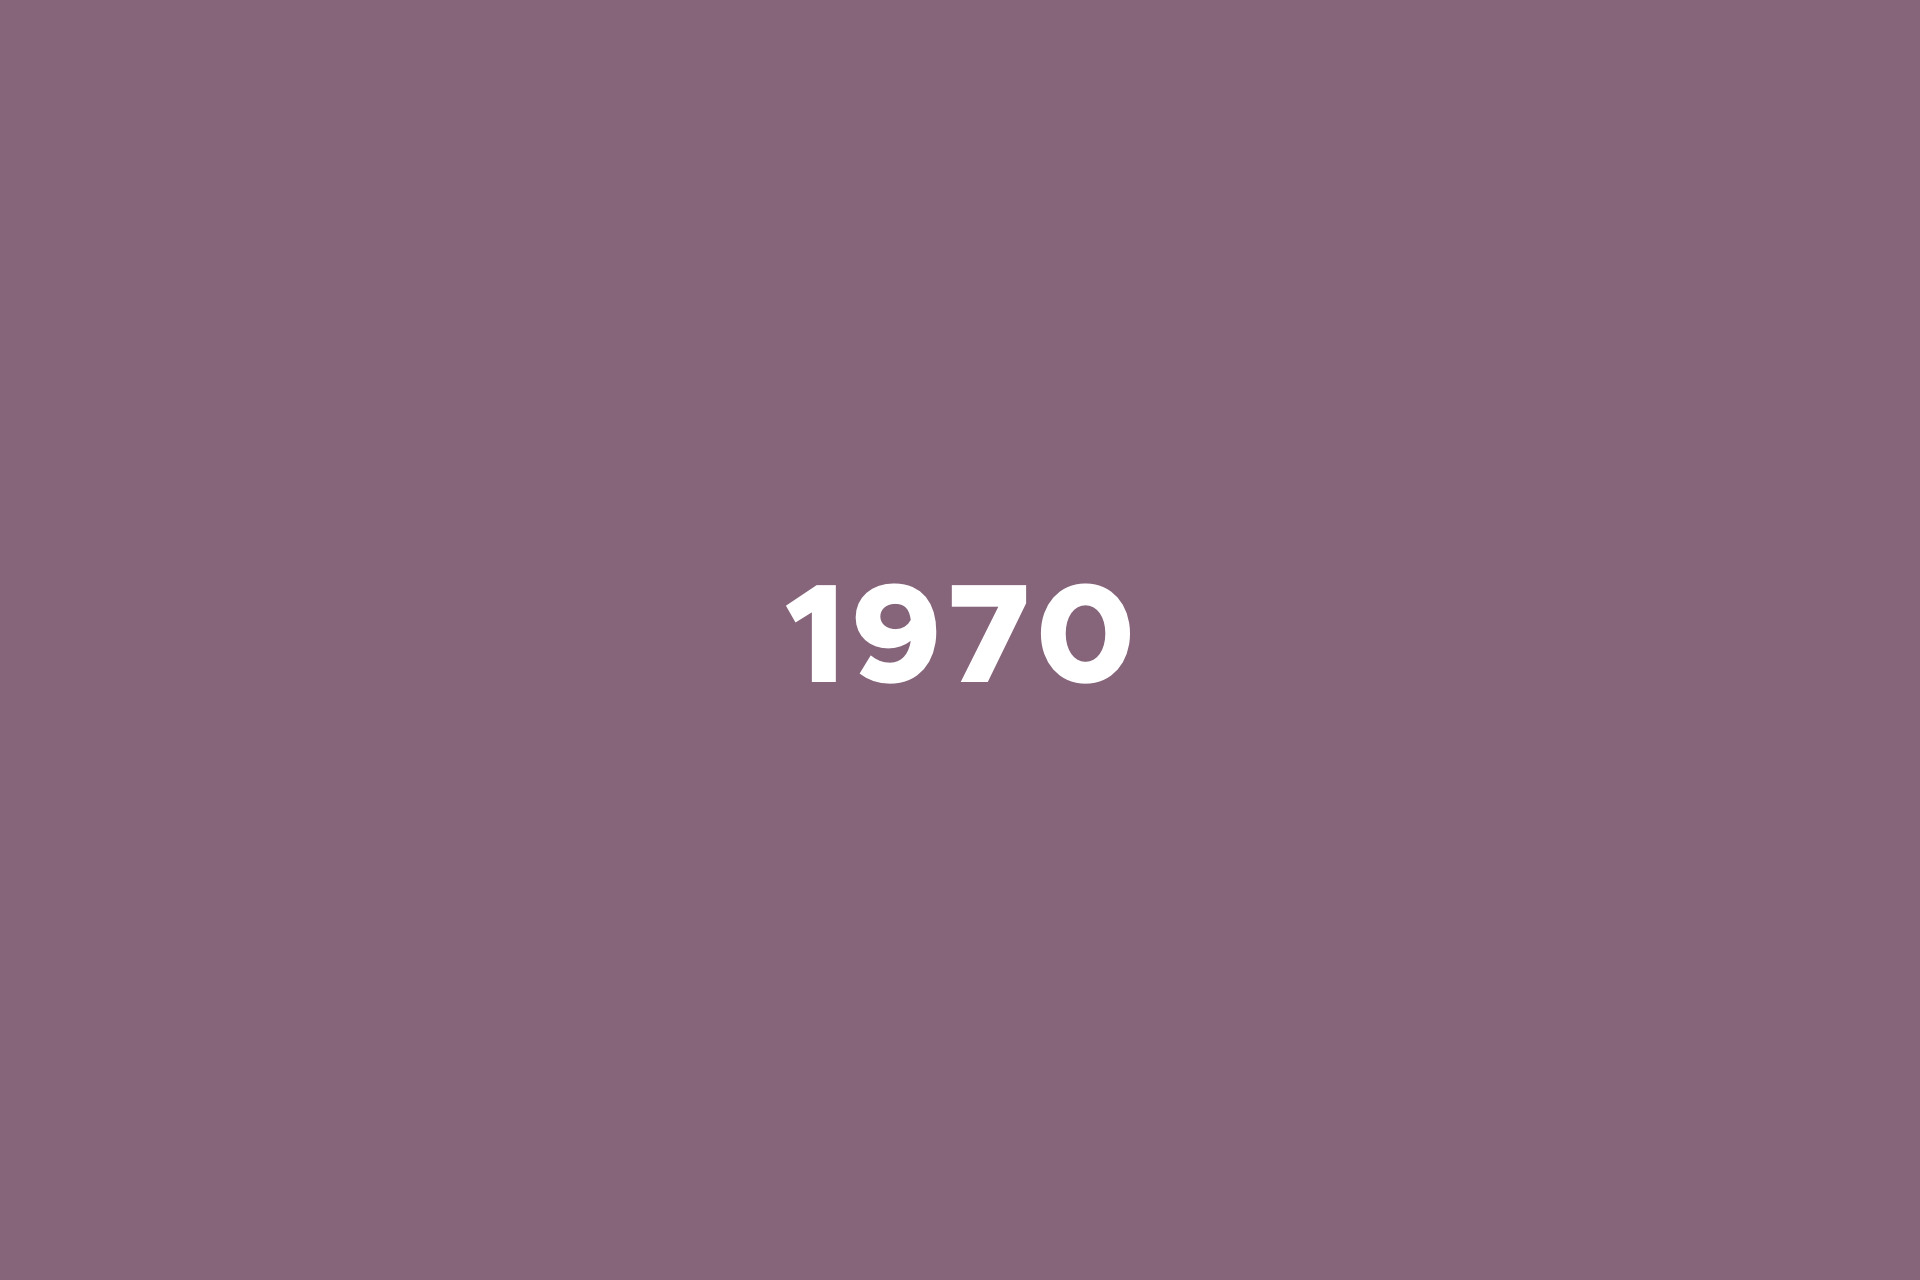 Året 1970 på skilt